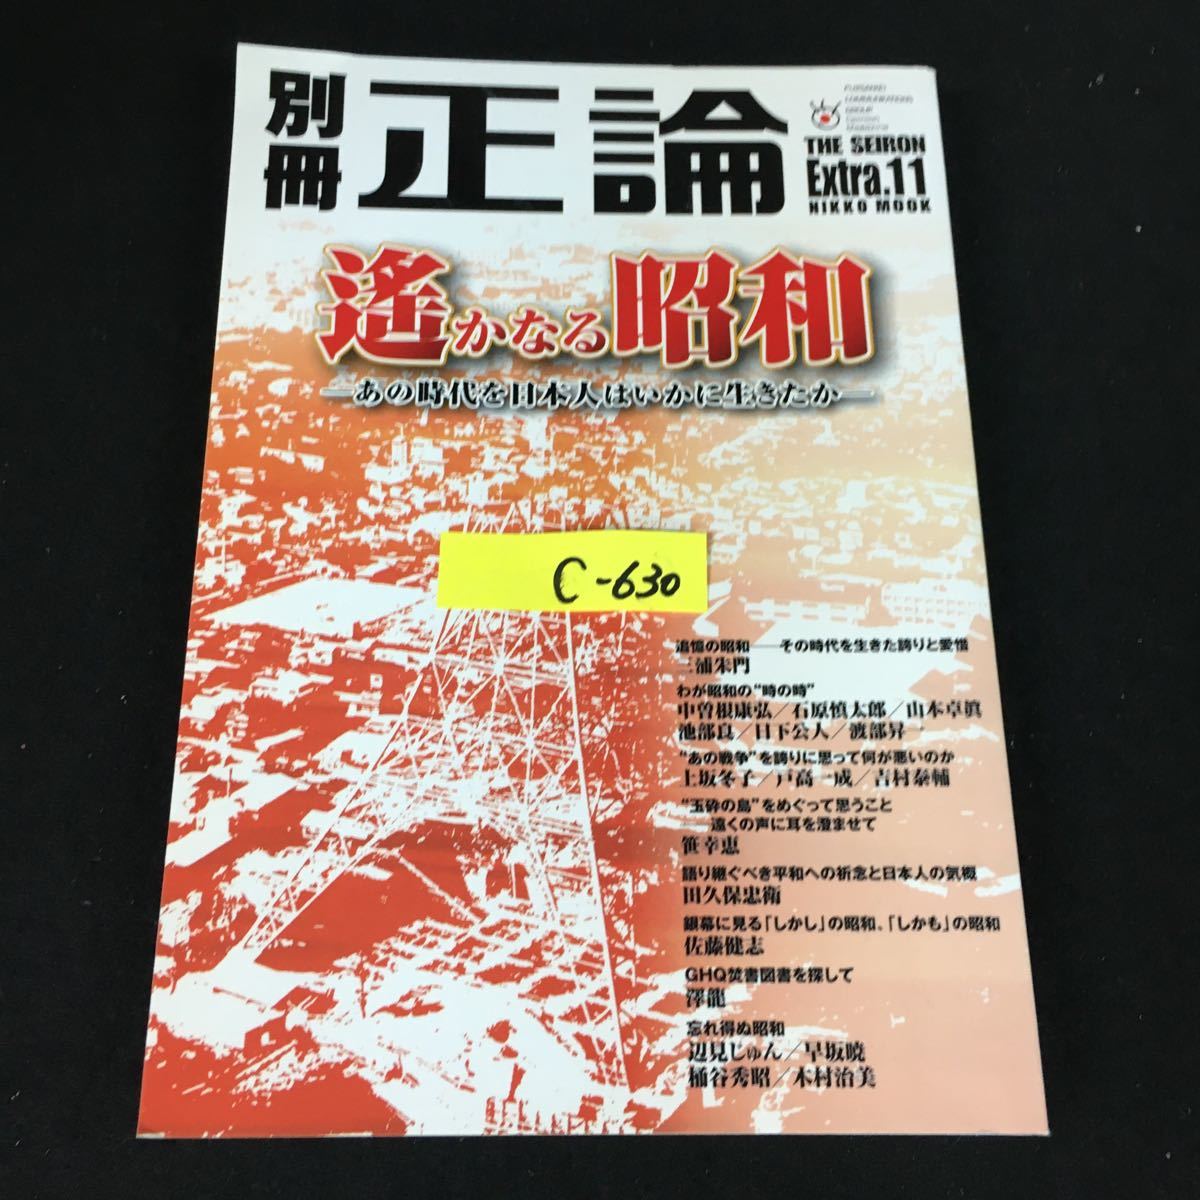 c-630 別冊正論 Extra.11 株式会社産経新聞社 2009年発行※12_画像1